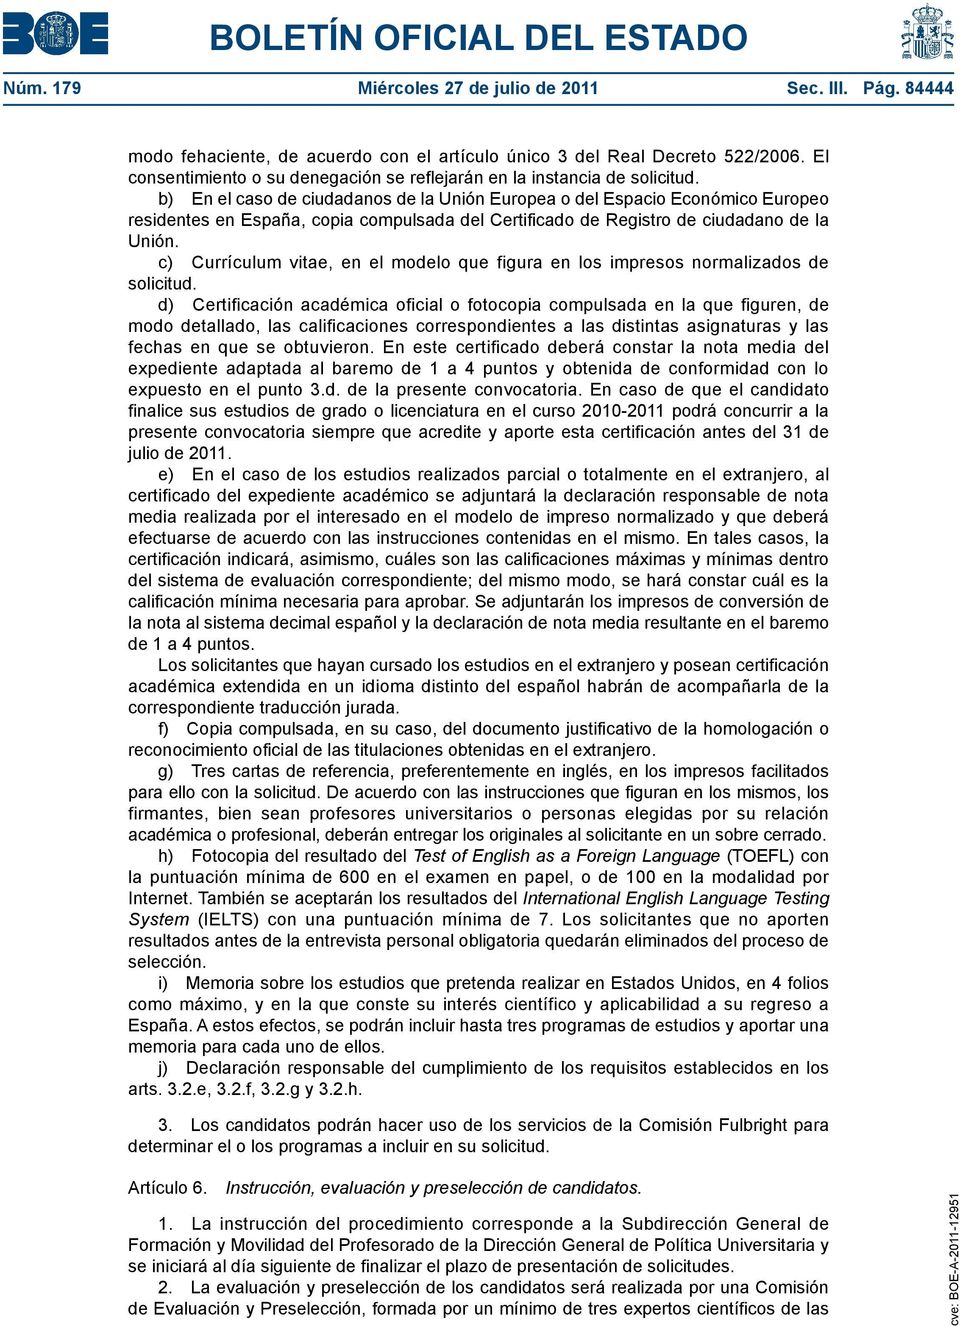 b) En el caso de ciudadanos de la Unión Europea o del Espacio Económico Europeo residentes en España, copia compulsada del Certificado de Registro de ciudadano de la Unión.